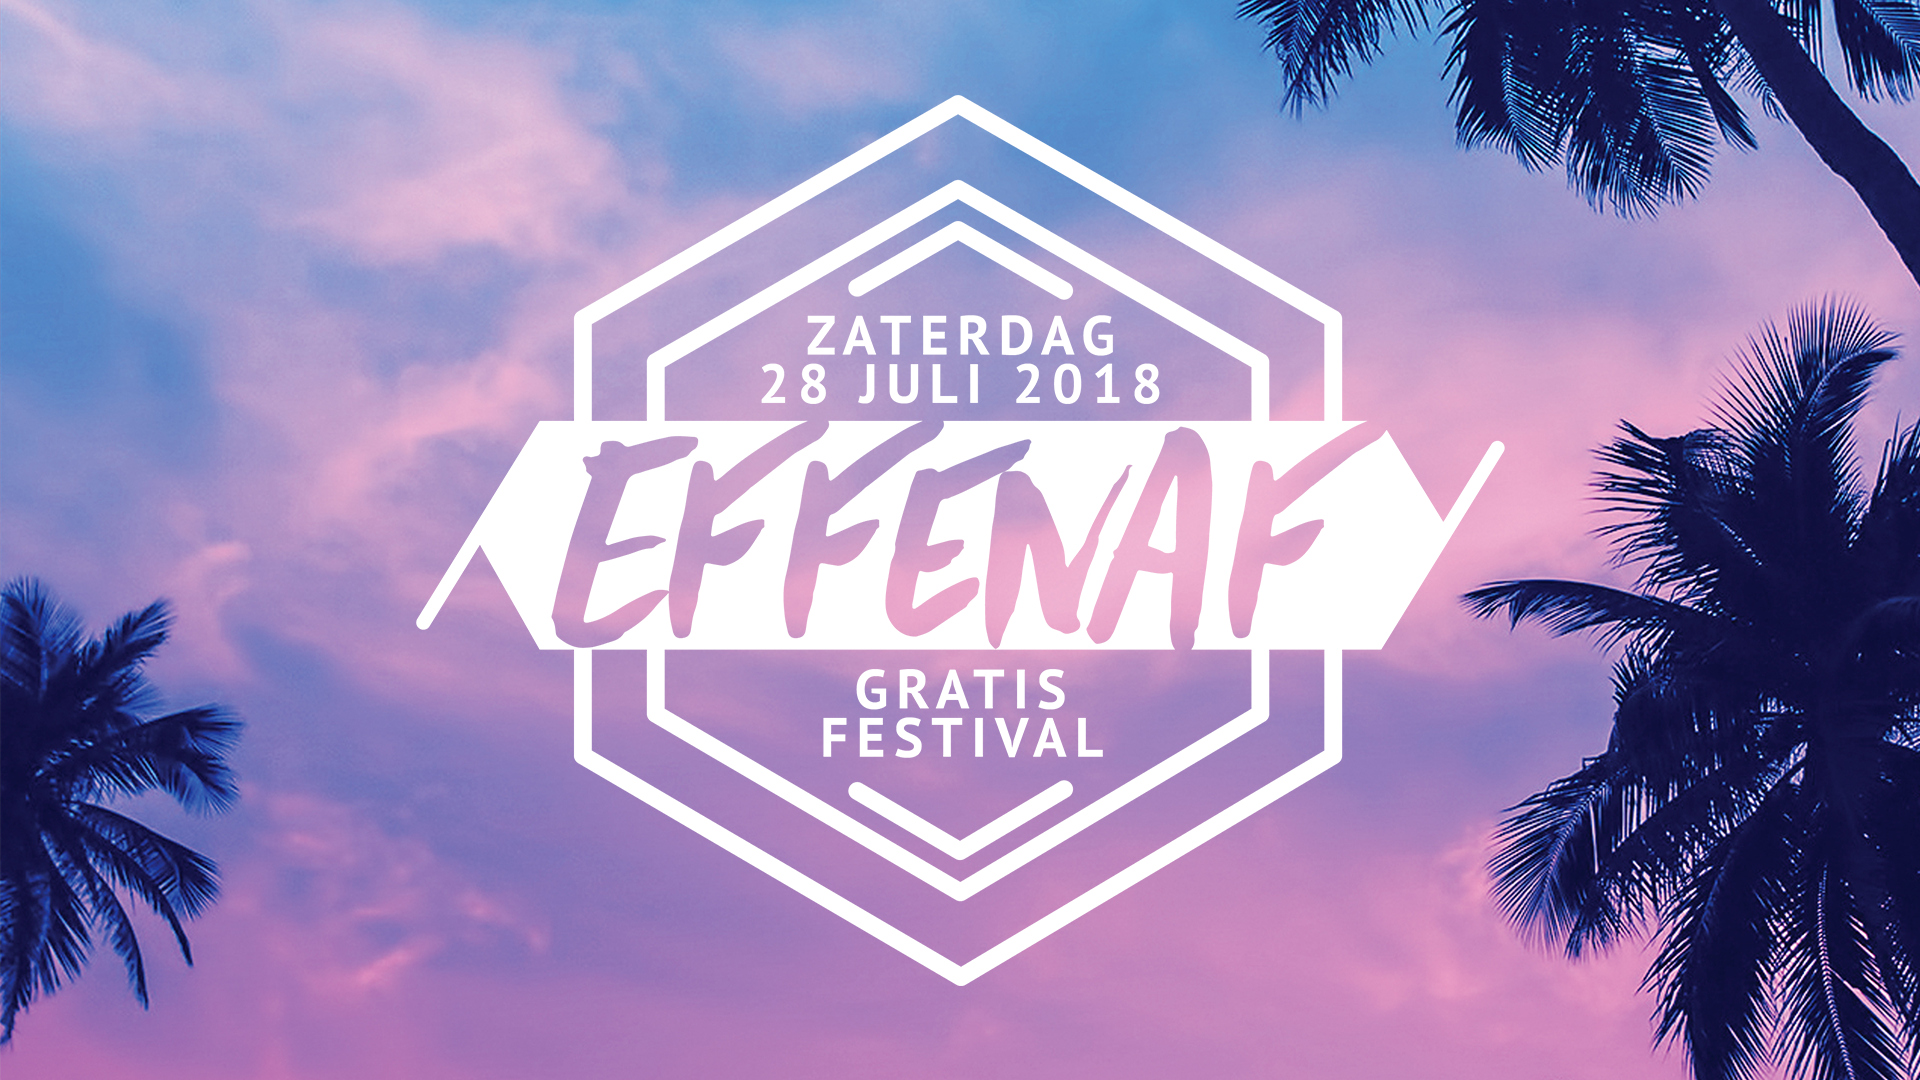 Effenaf Festival 2018